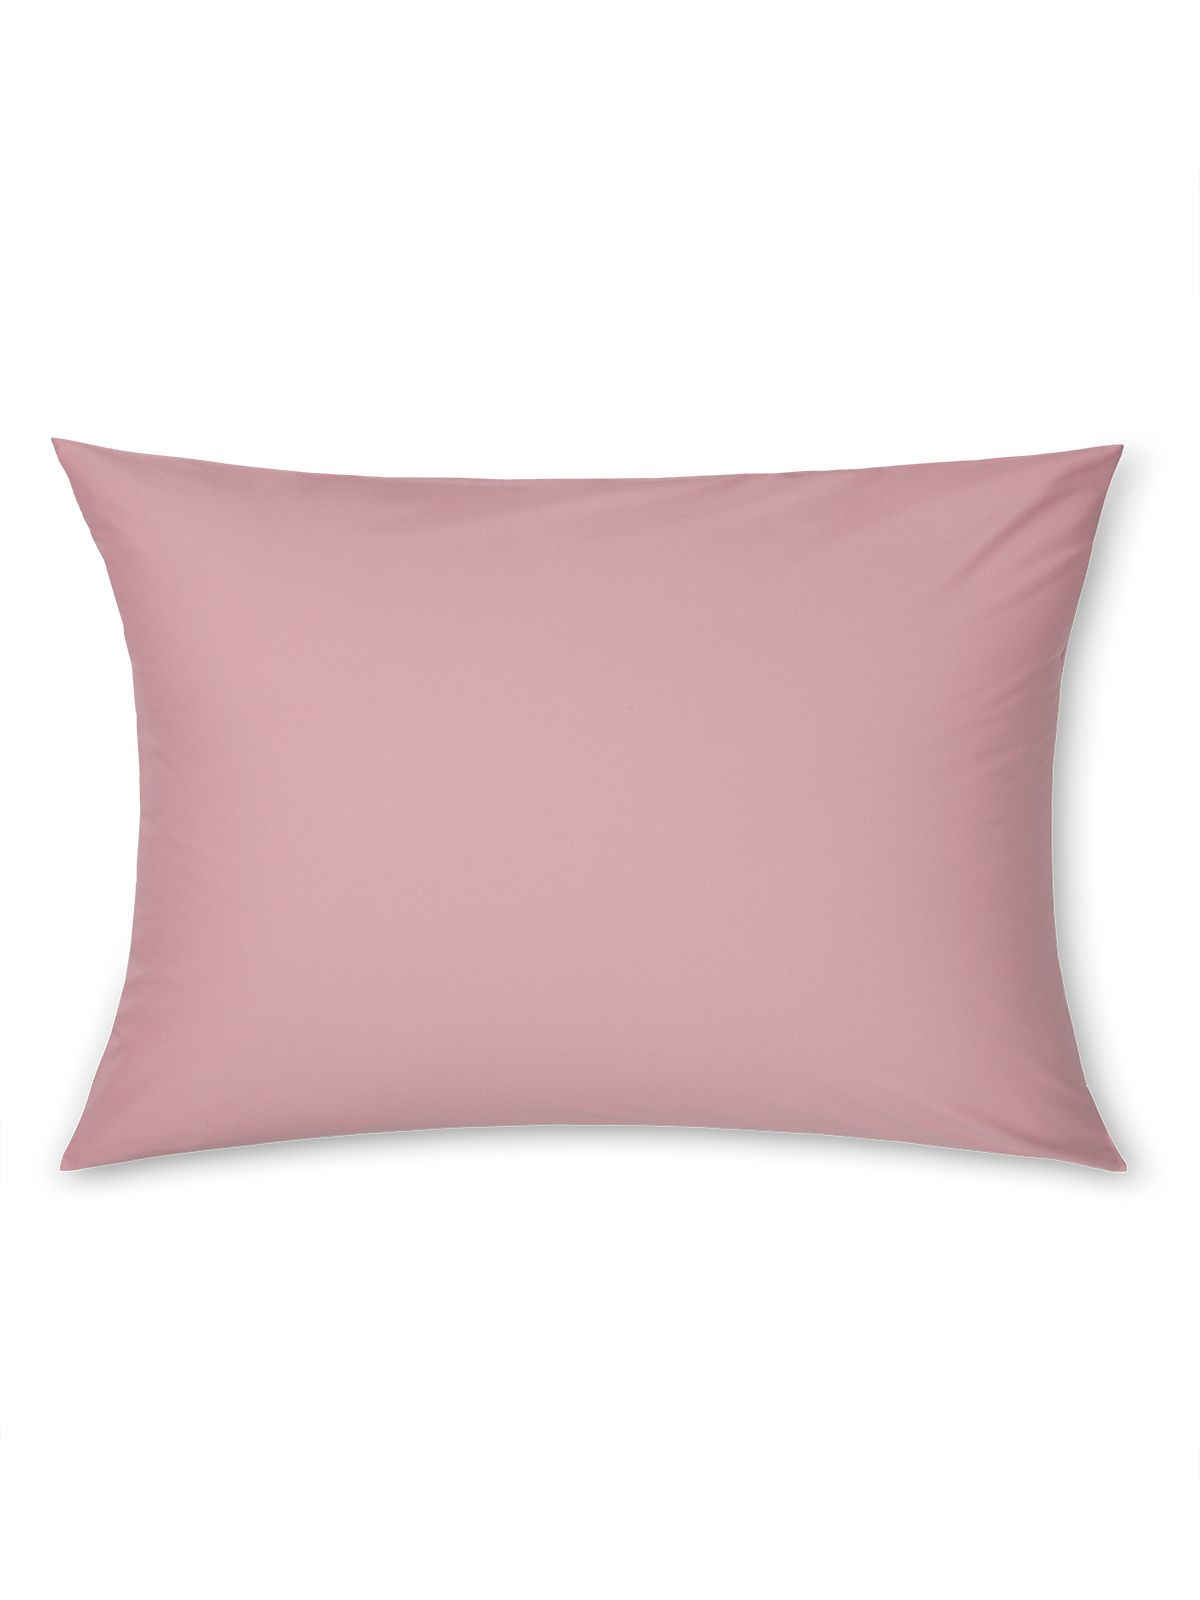 Комплект наволочек Dome Морисо розовый 50x70 см 2предмета хлопок сатин